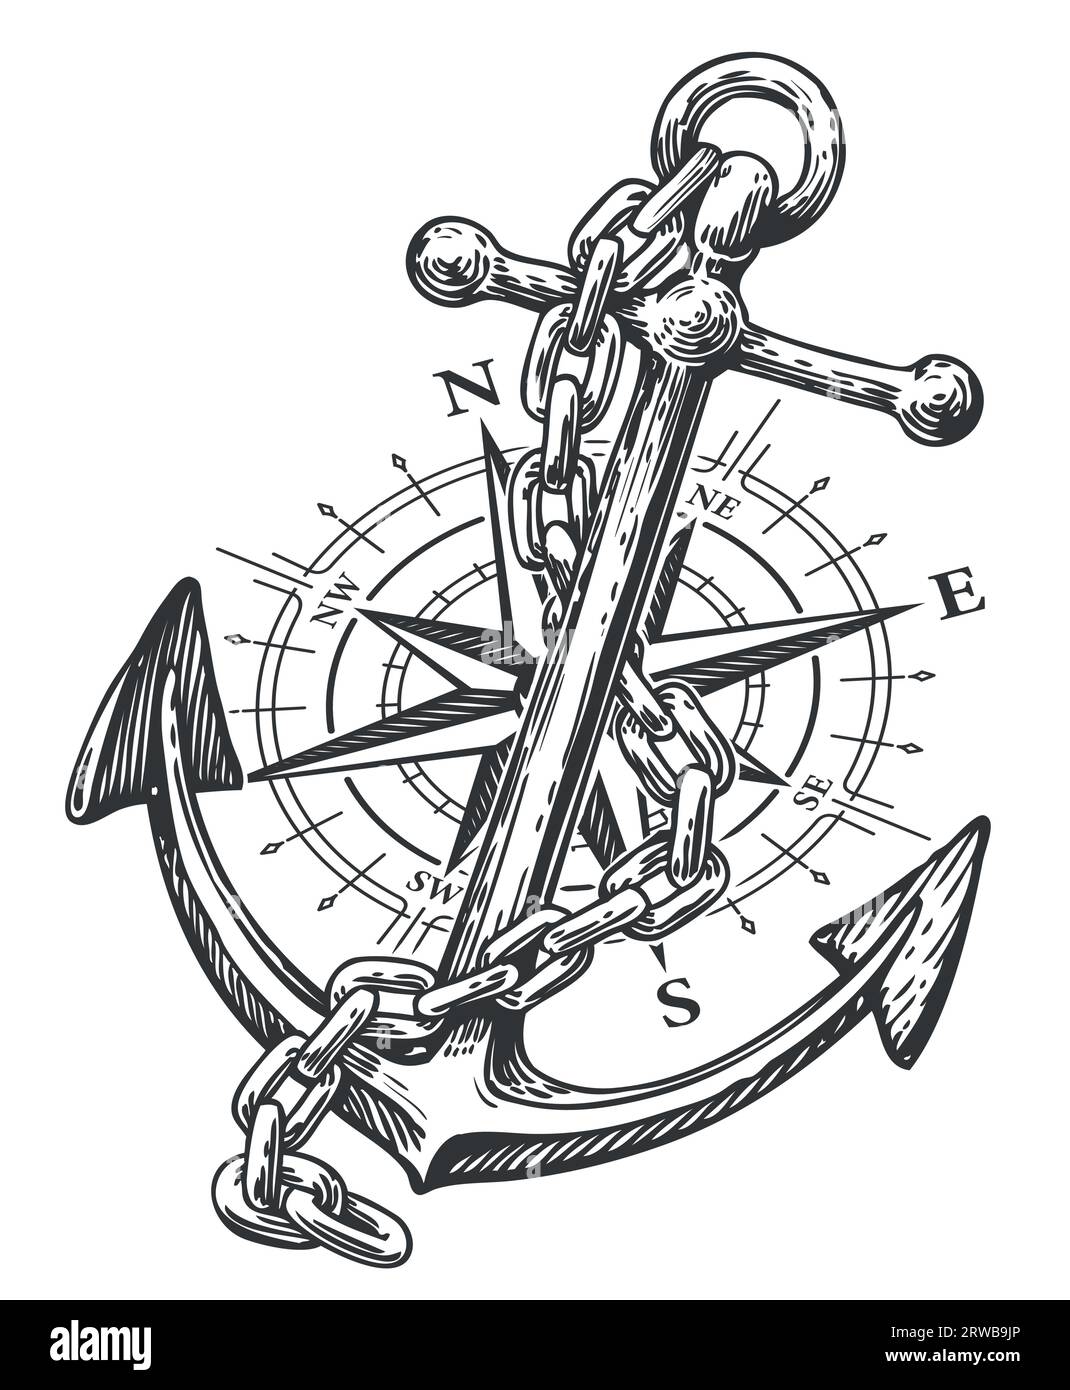 Bussola, Rosa del vento e ancora con corda in stile incisione. Illustrazione vettoriale di schizzo vintage Illustrazione Vettoriale